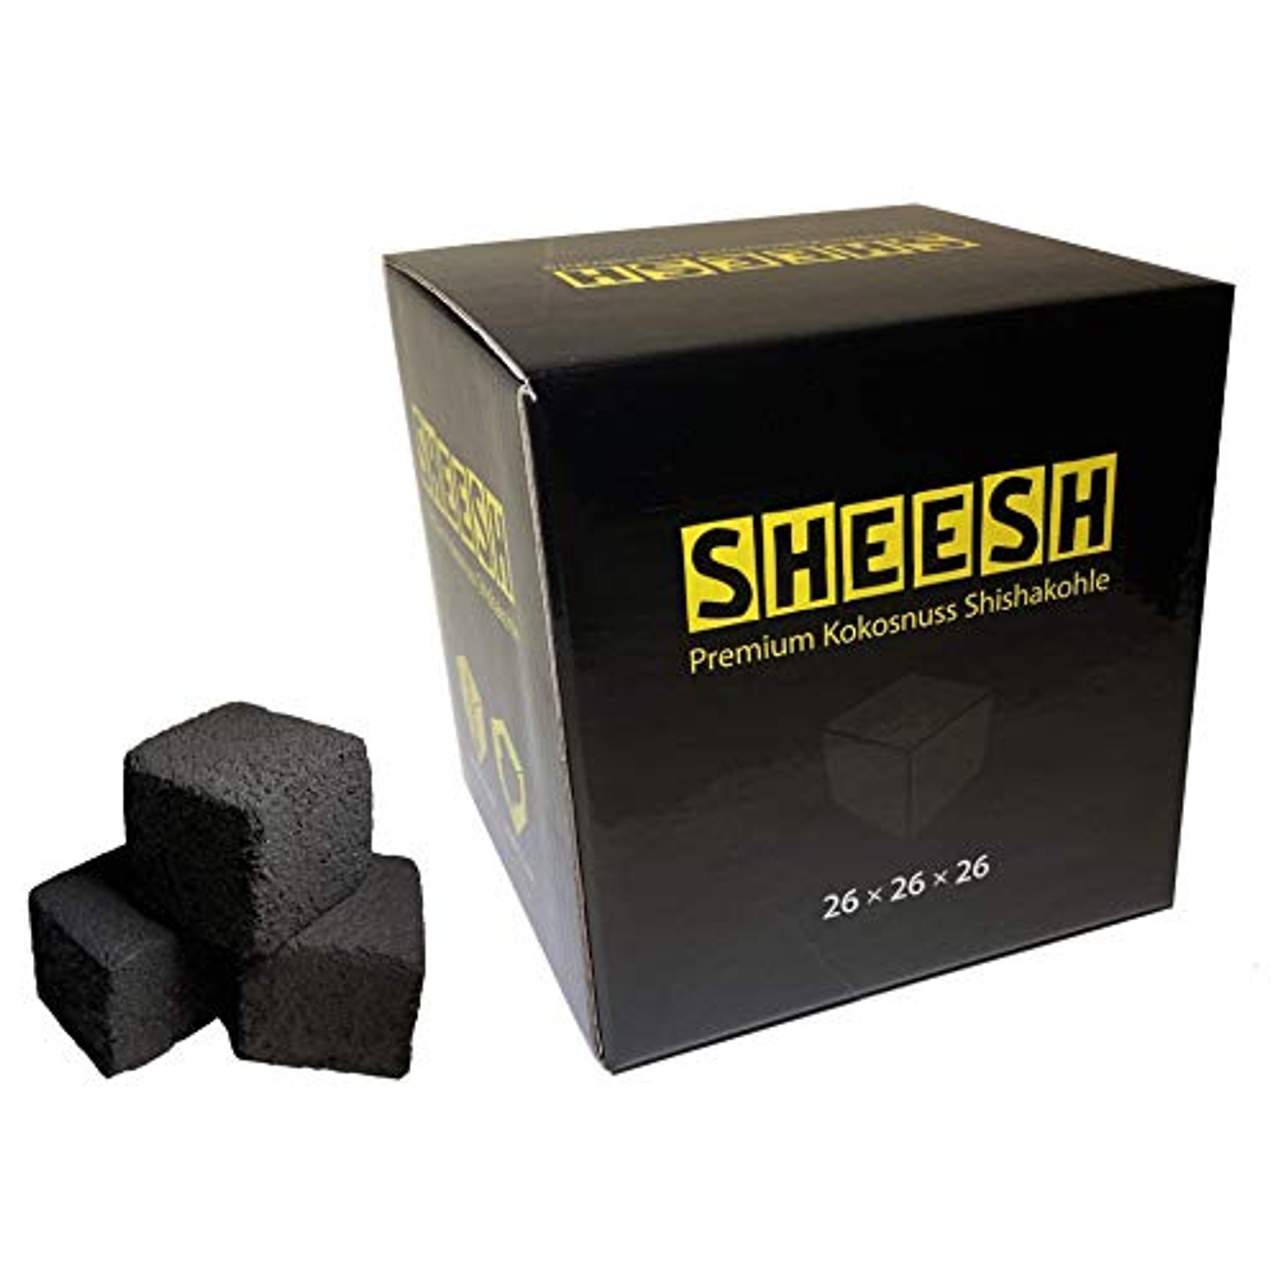 Sheesh by CocoBeach Premium Kokosnuss Shishakohle